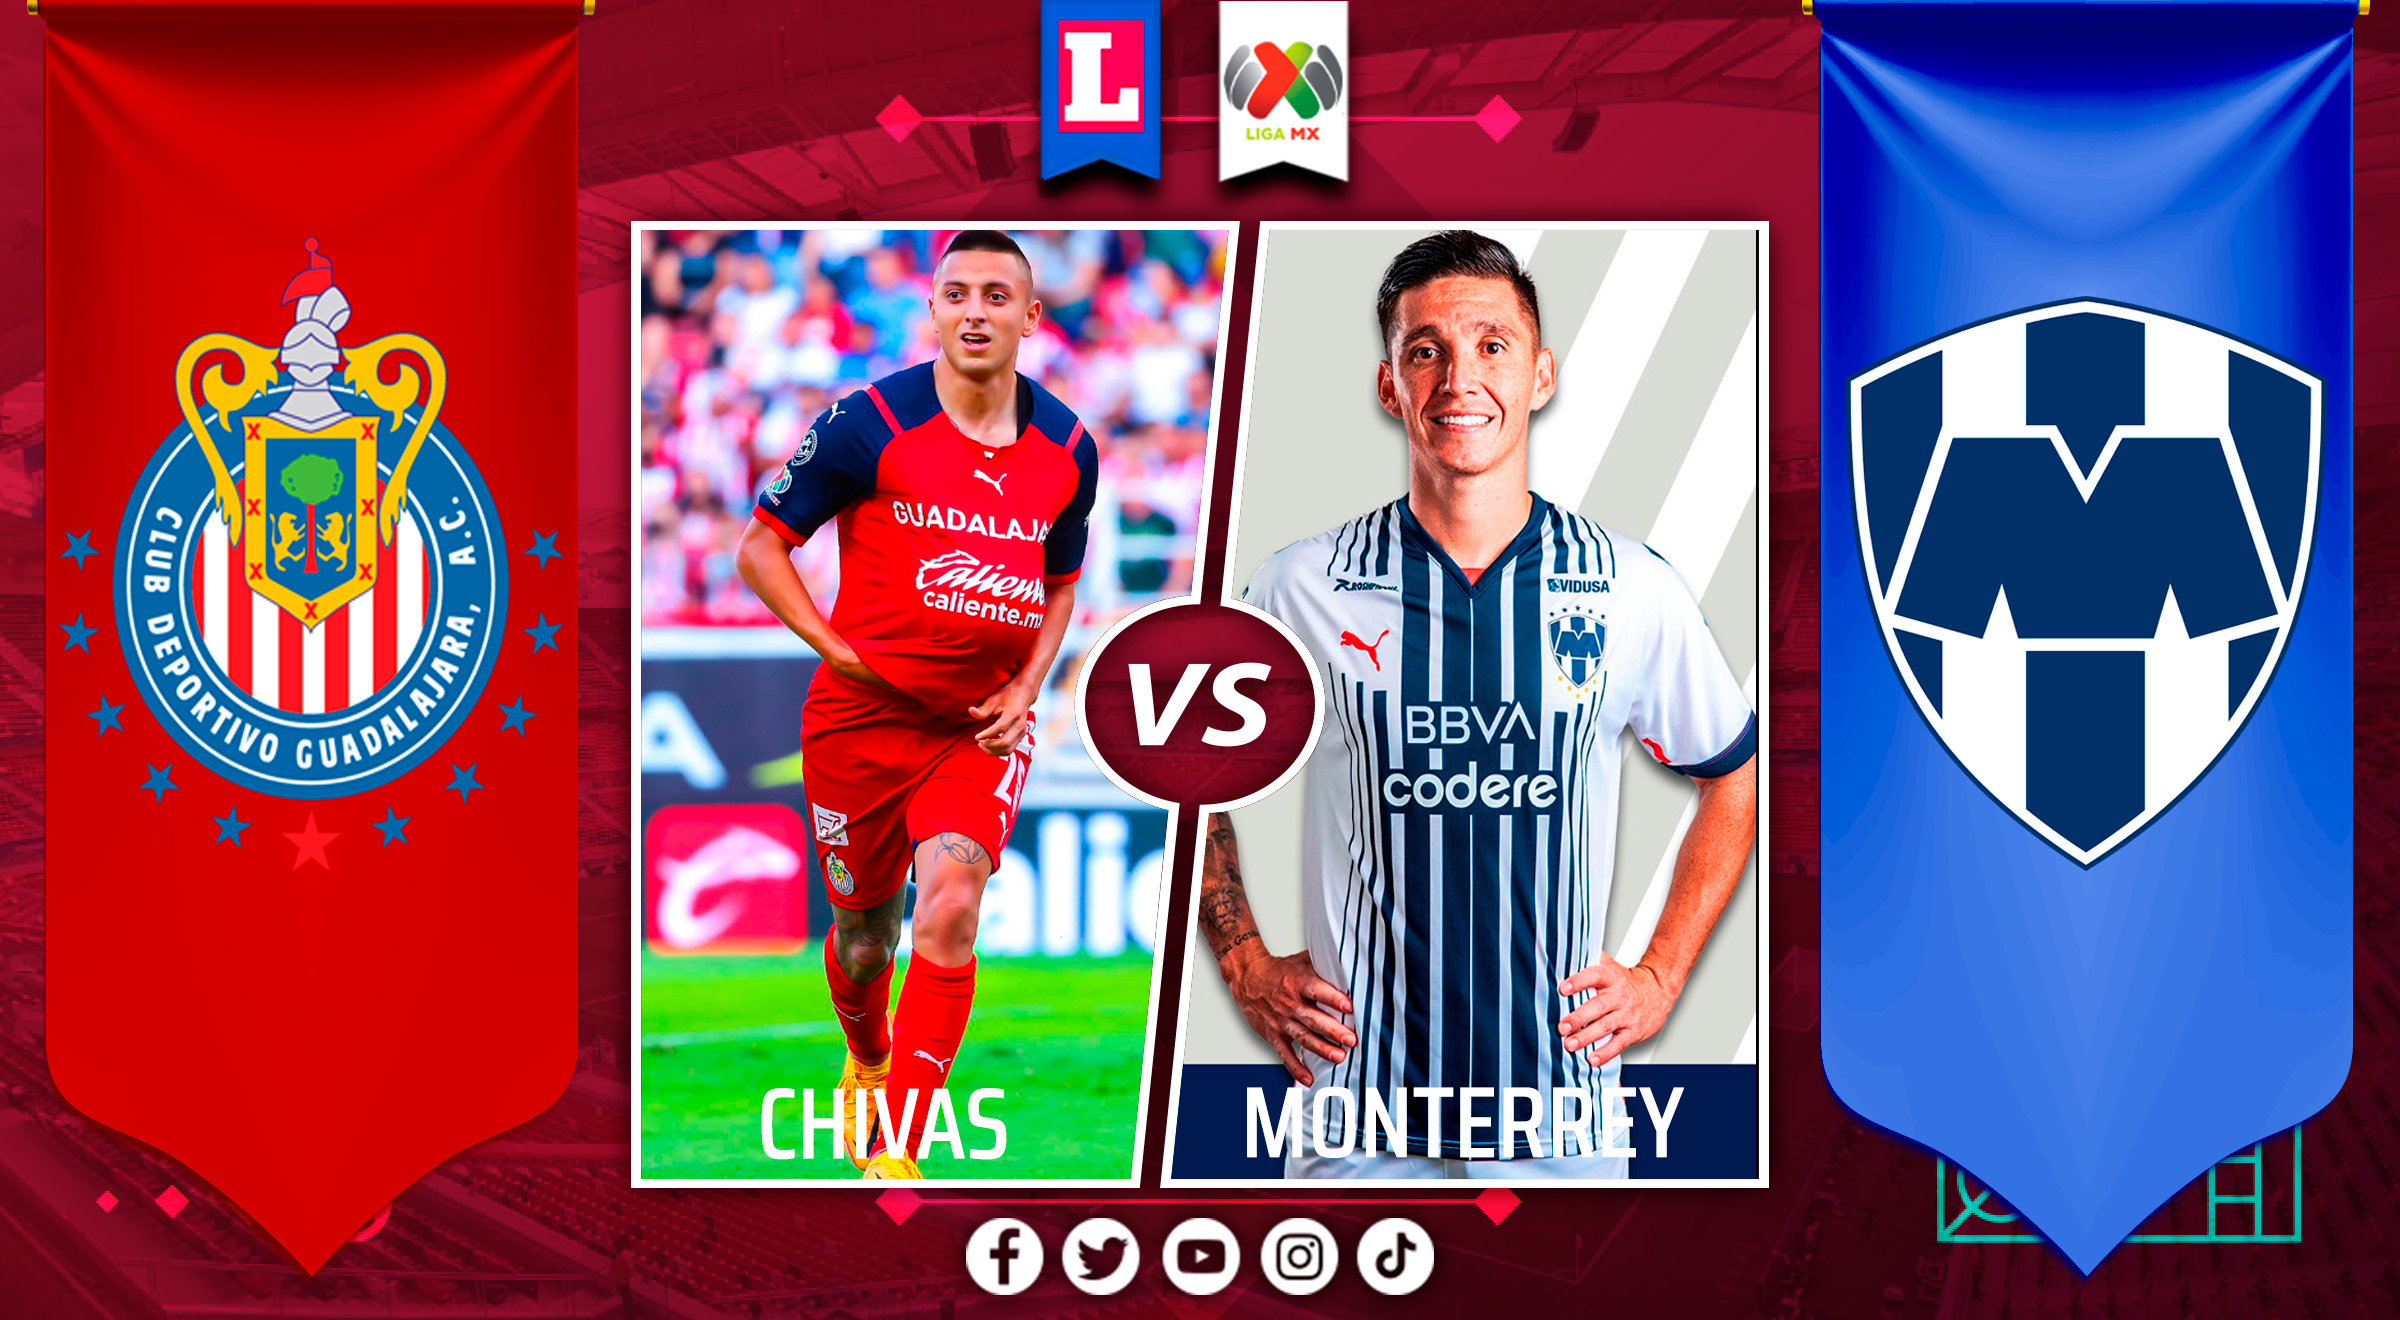 Horario del partido Chivas vs Monterrey HOY por jornada 11 Liga MX 2022